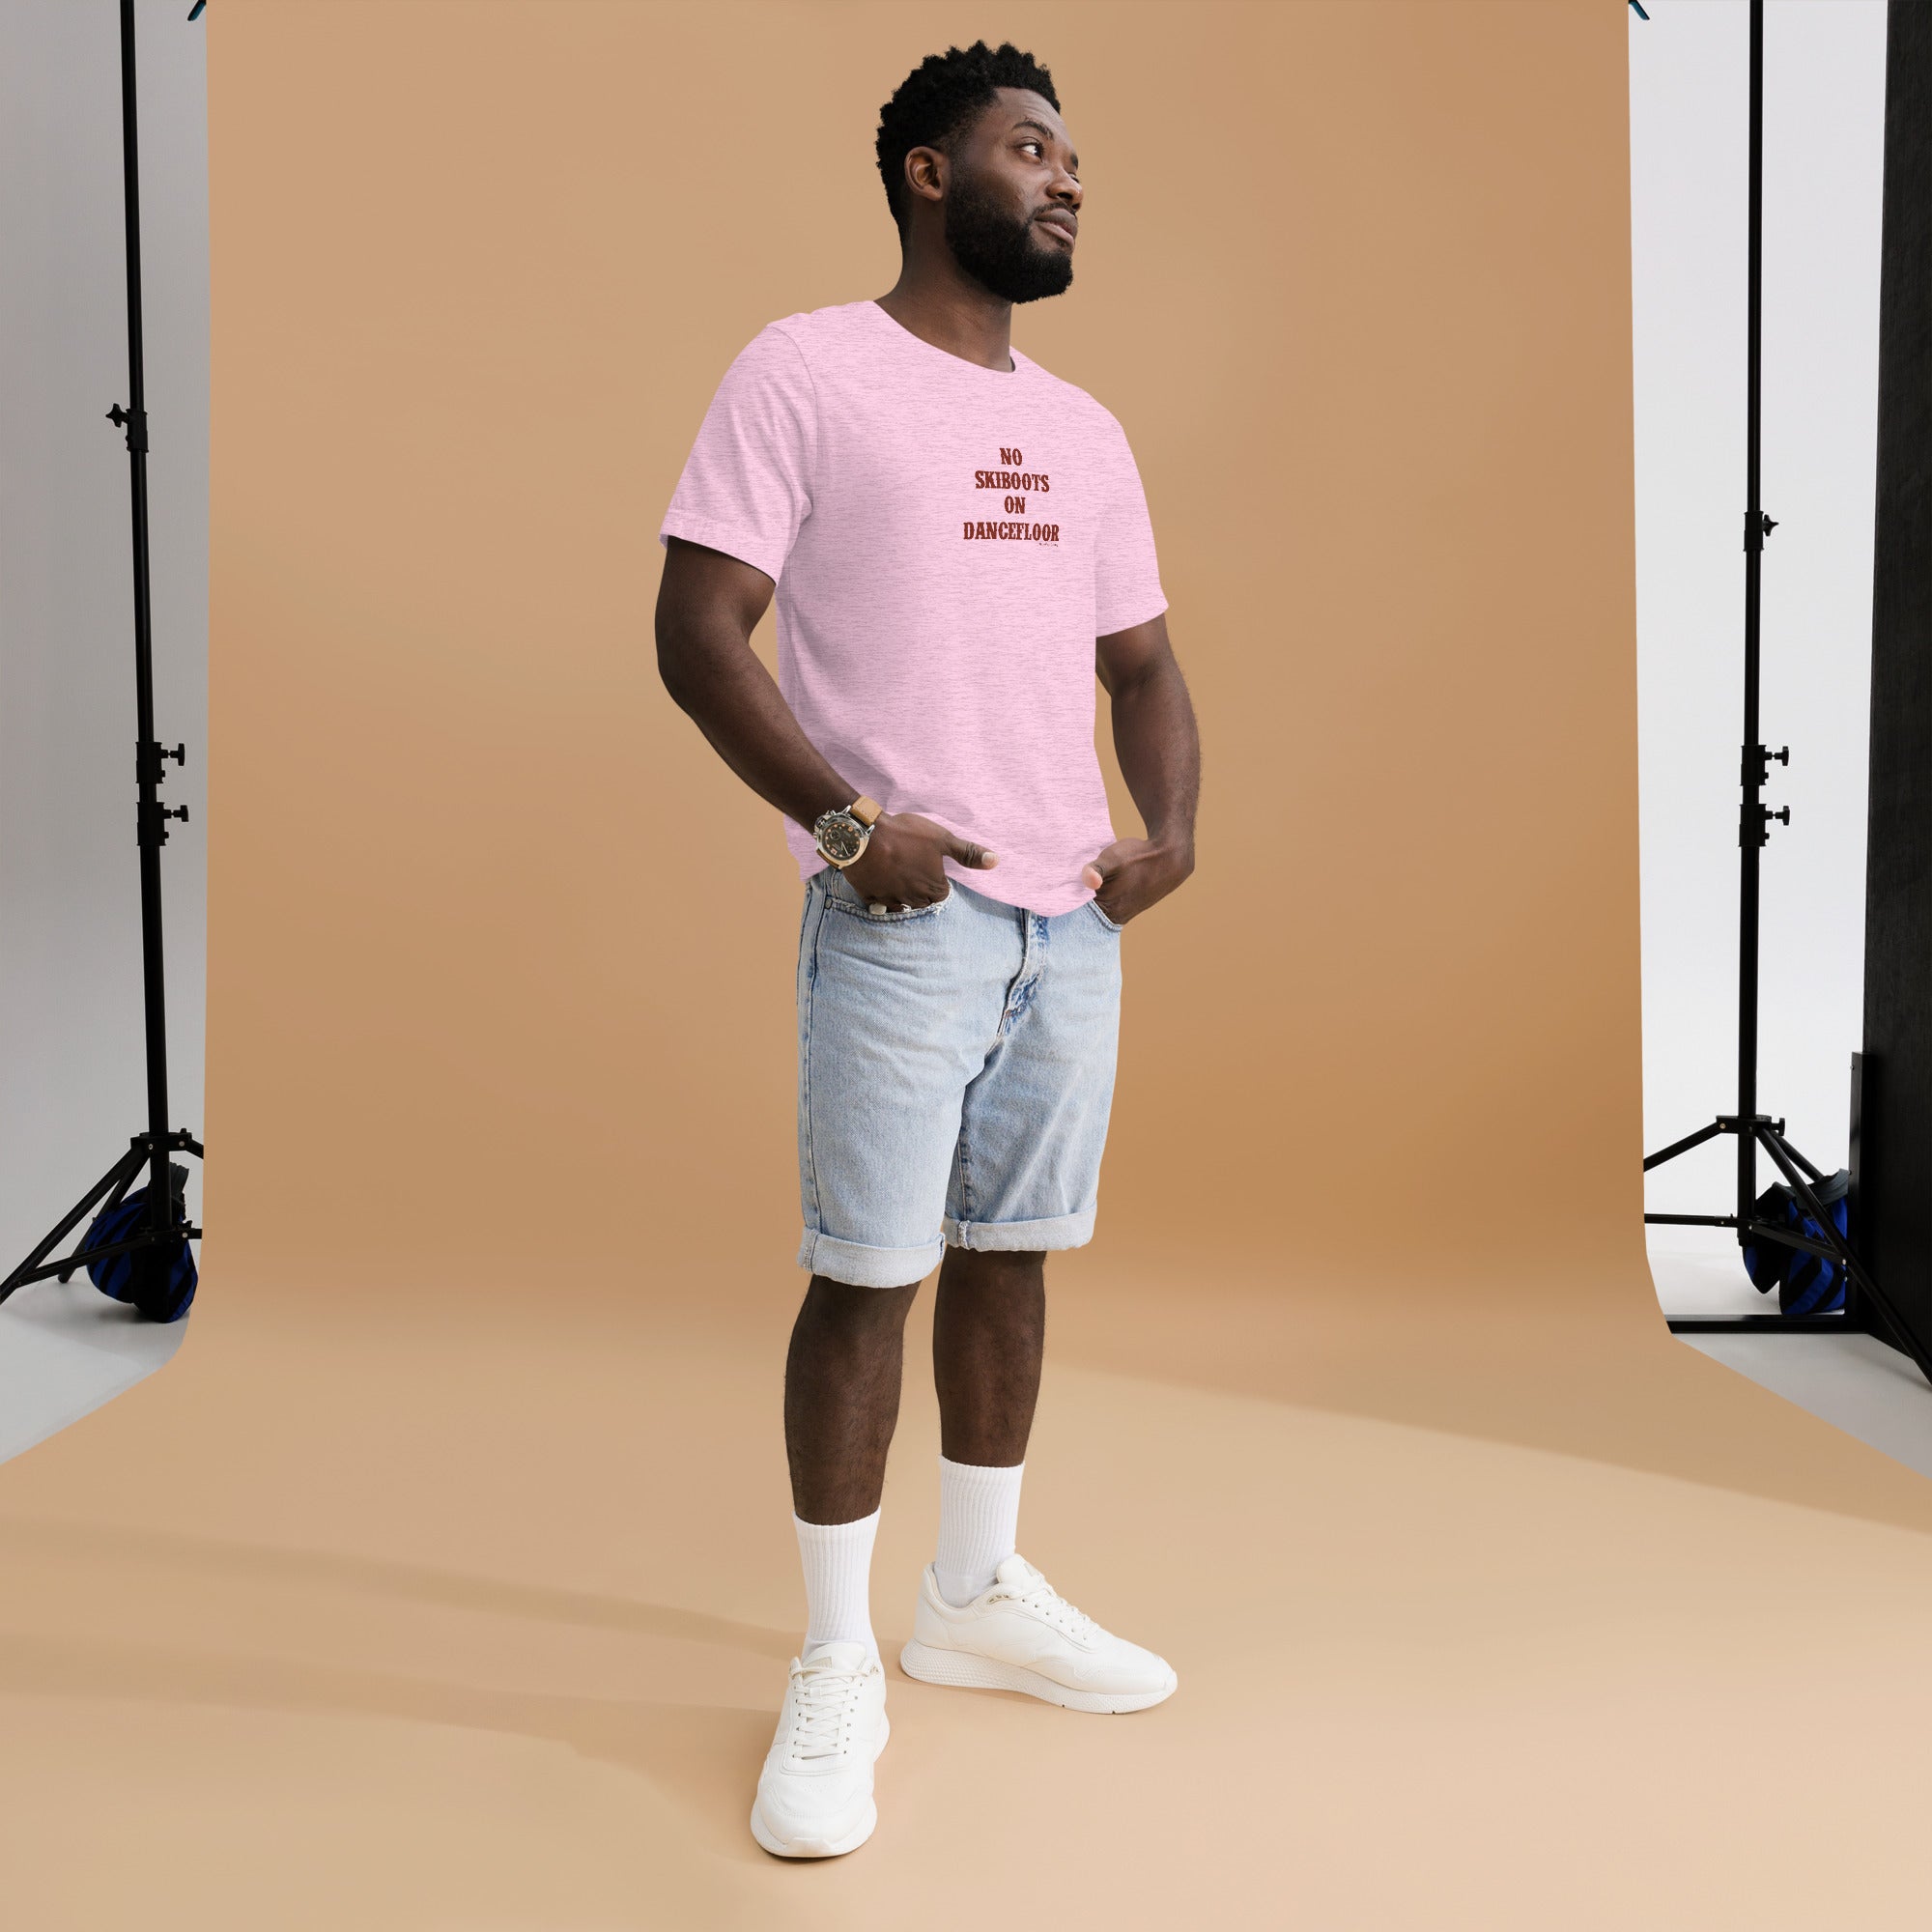 T-shirt en coton unisexe No Skiboots on Dancefloor sur couleurs chinées claires